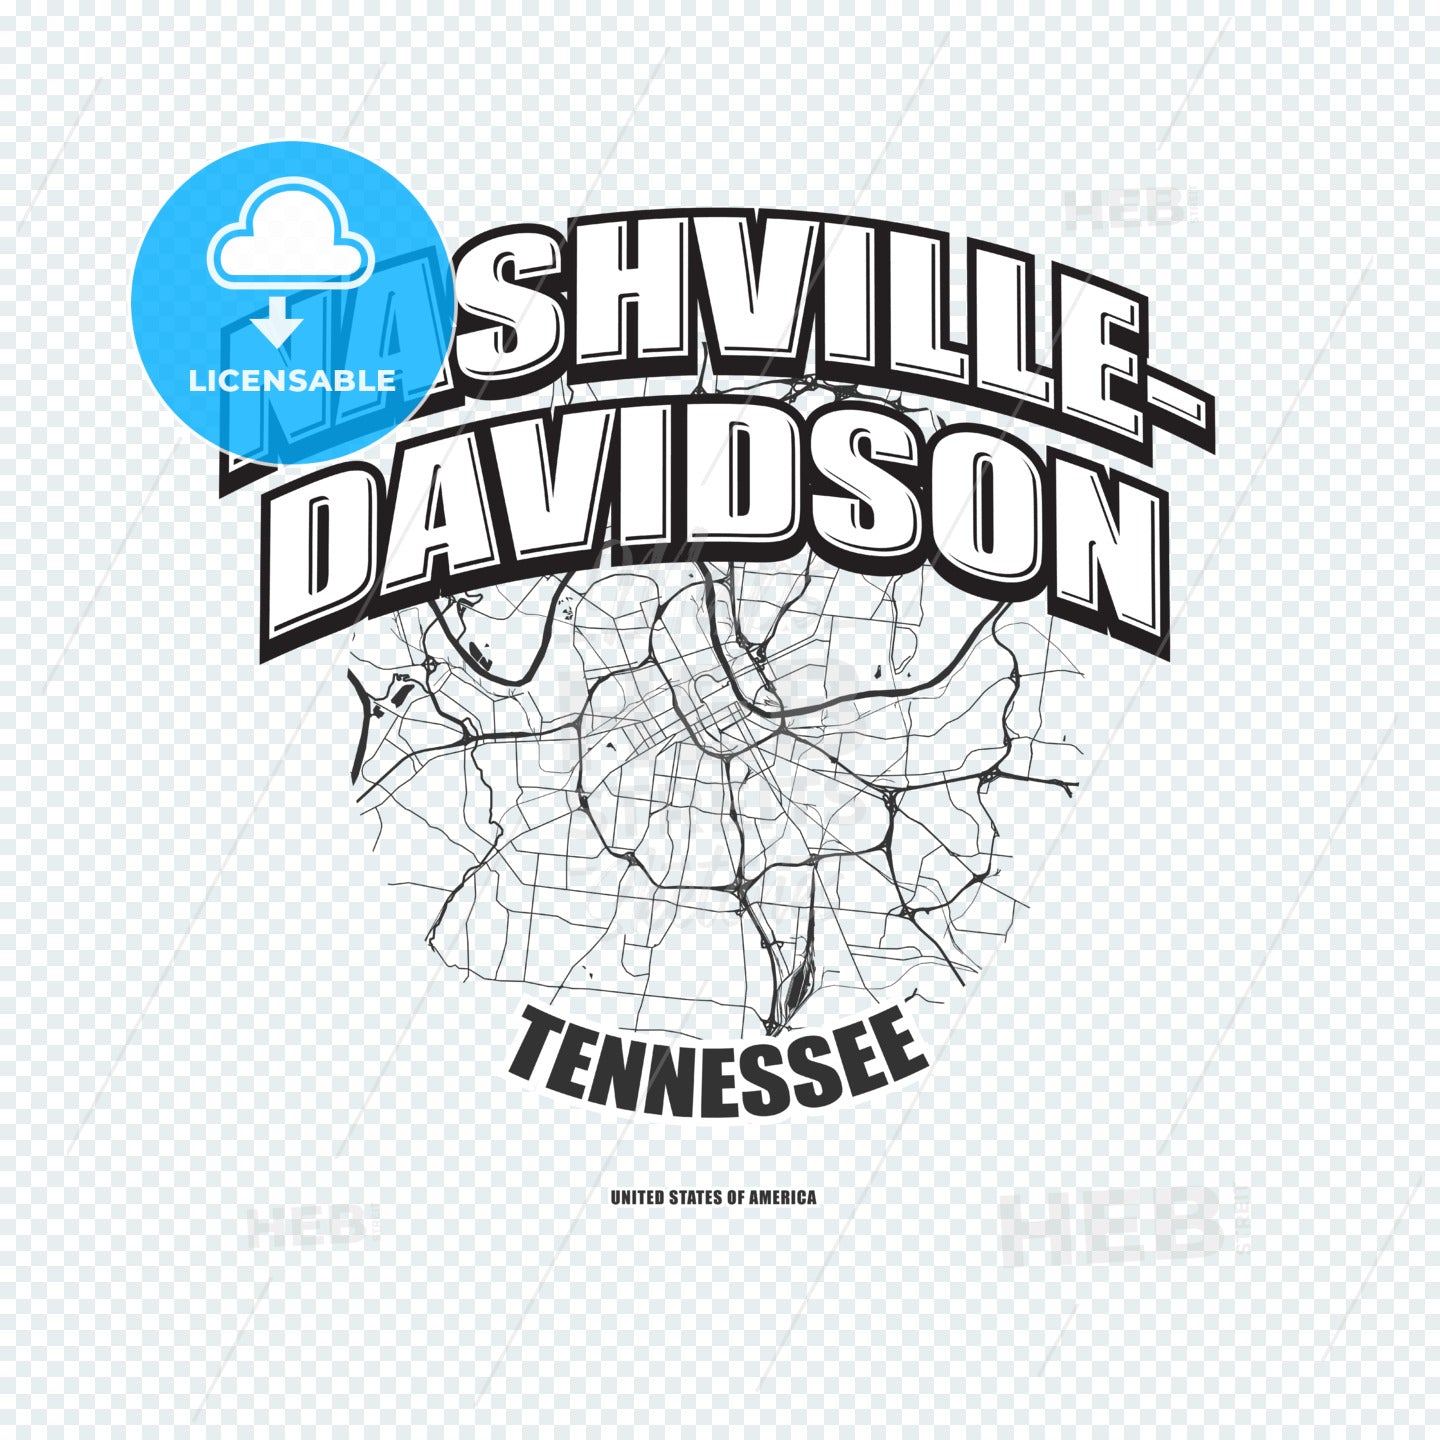 Nashville, Tennessee, logo artwork – instant download